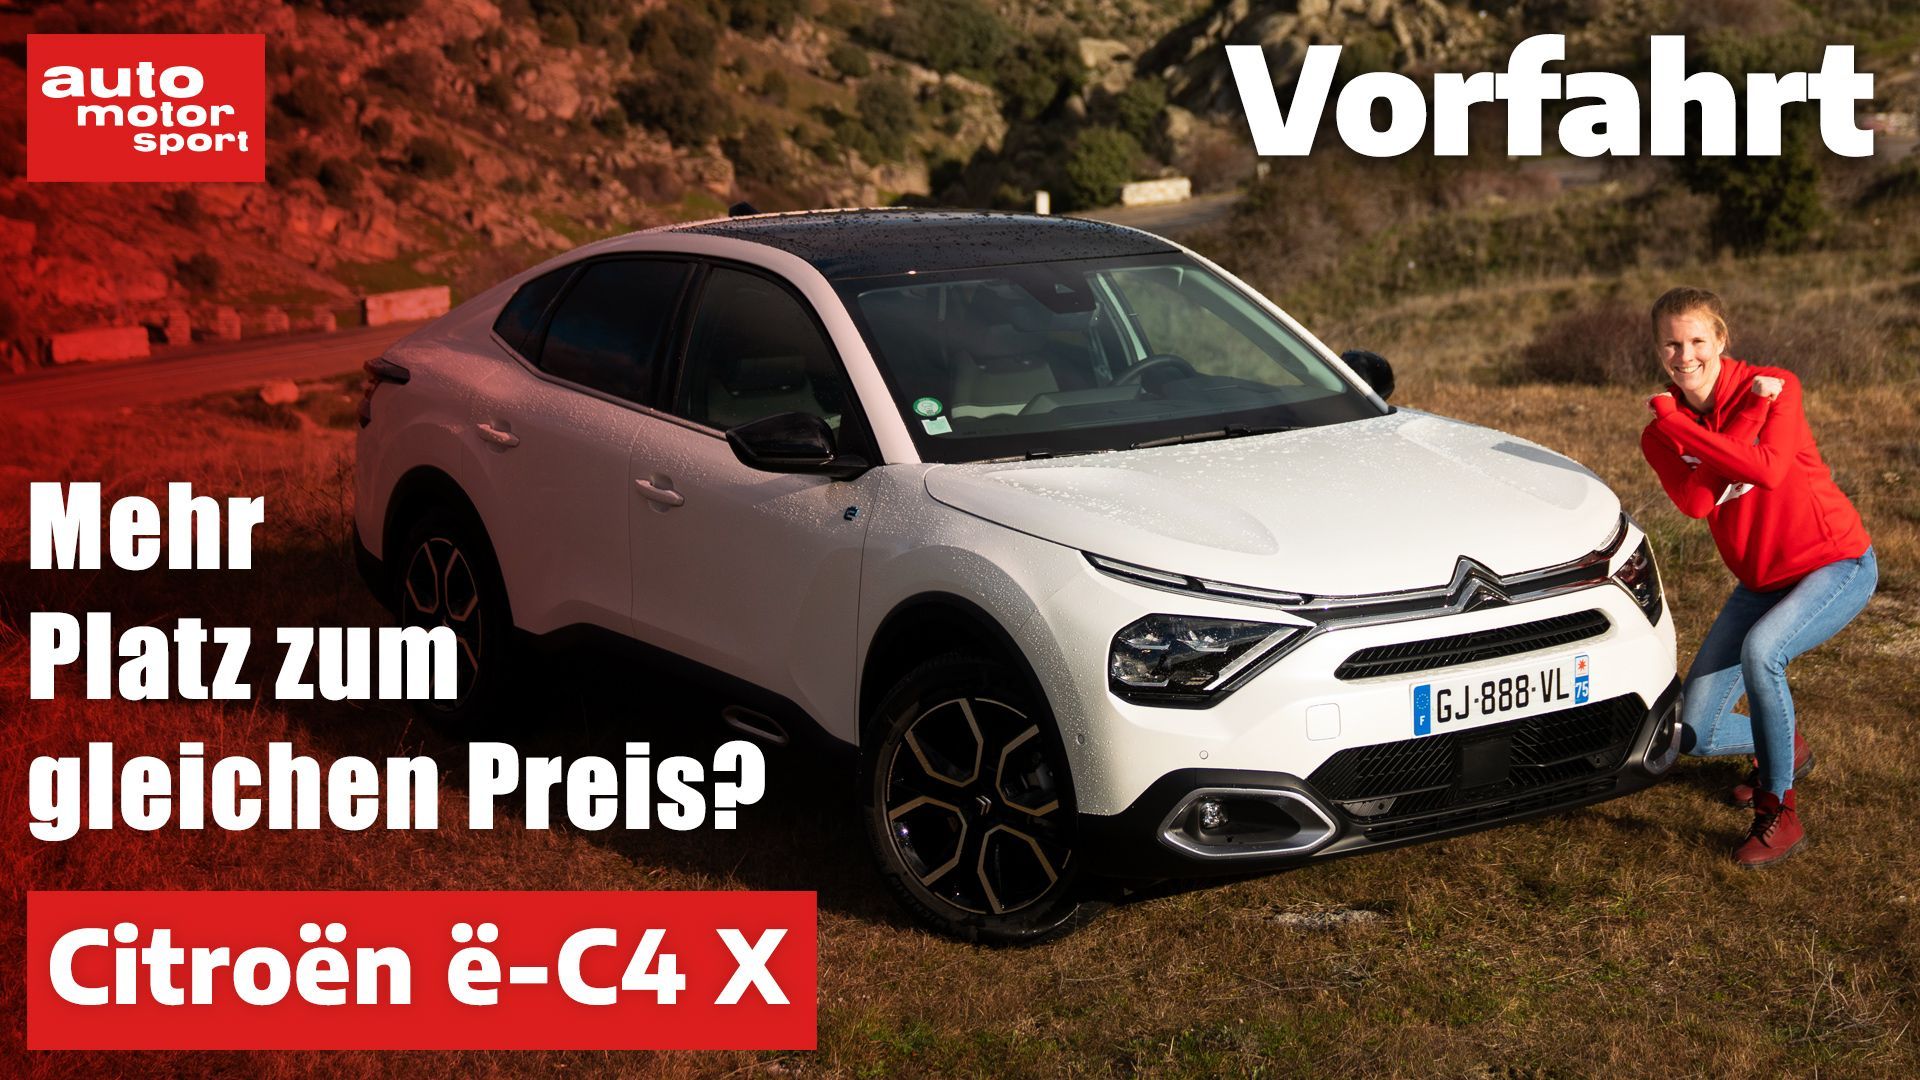 Citroën ë-C4 X: Comfort it can do, but....